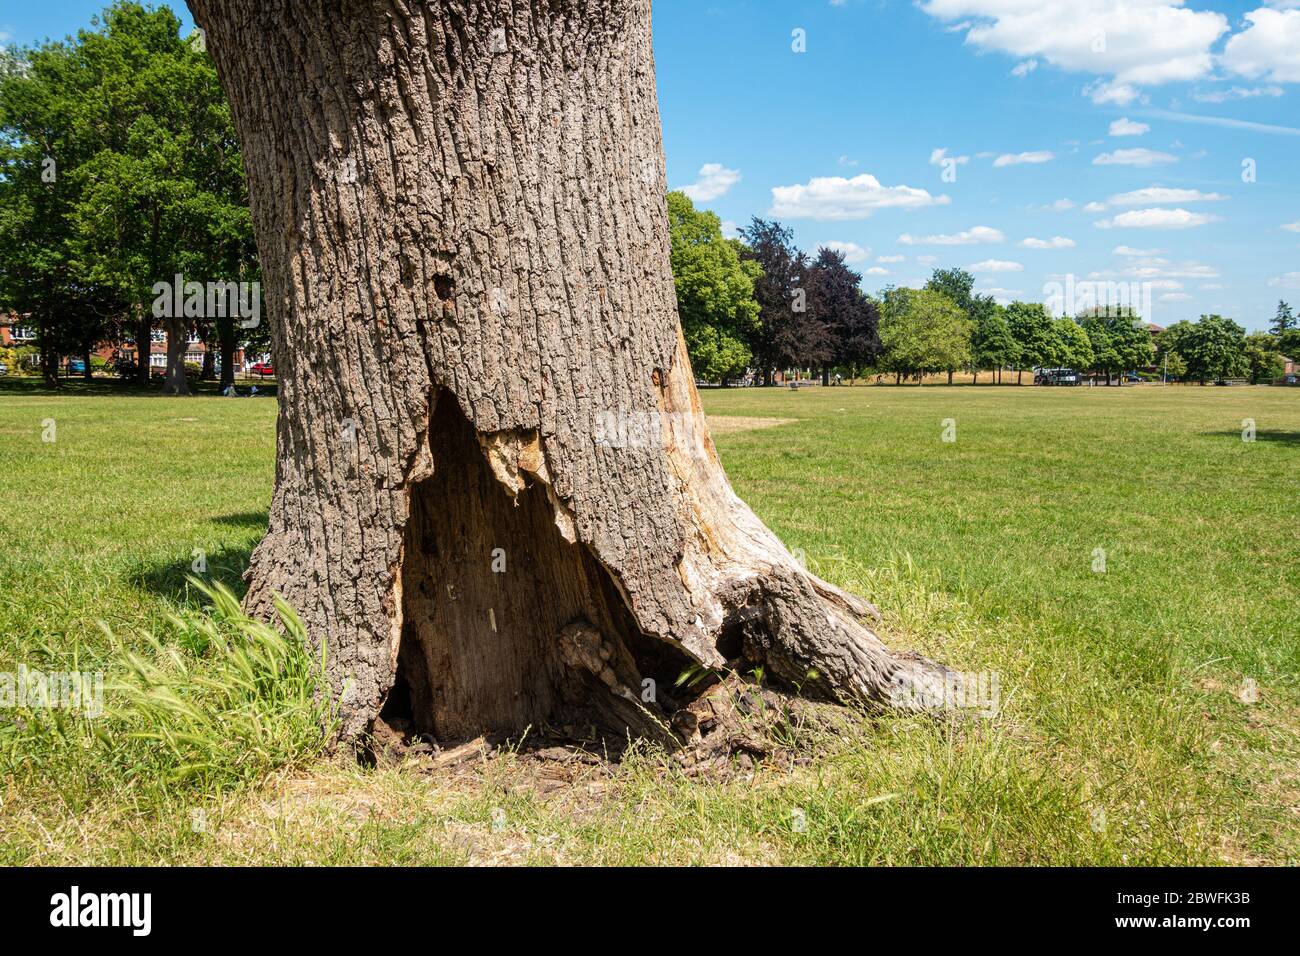 La base d'un arbre vieux et mort a un trou qui peut créer un abri pour les petits animaux. Herbe verte et ciel bleu en été. Banque D'Images